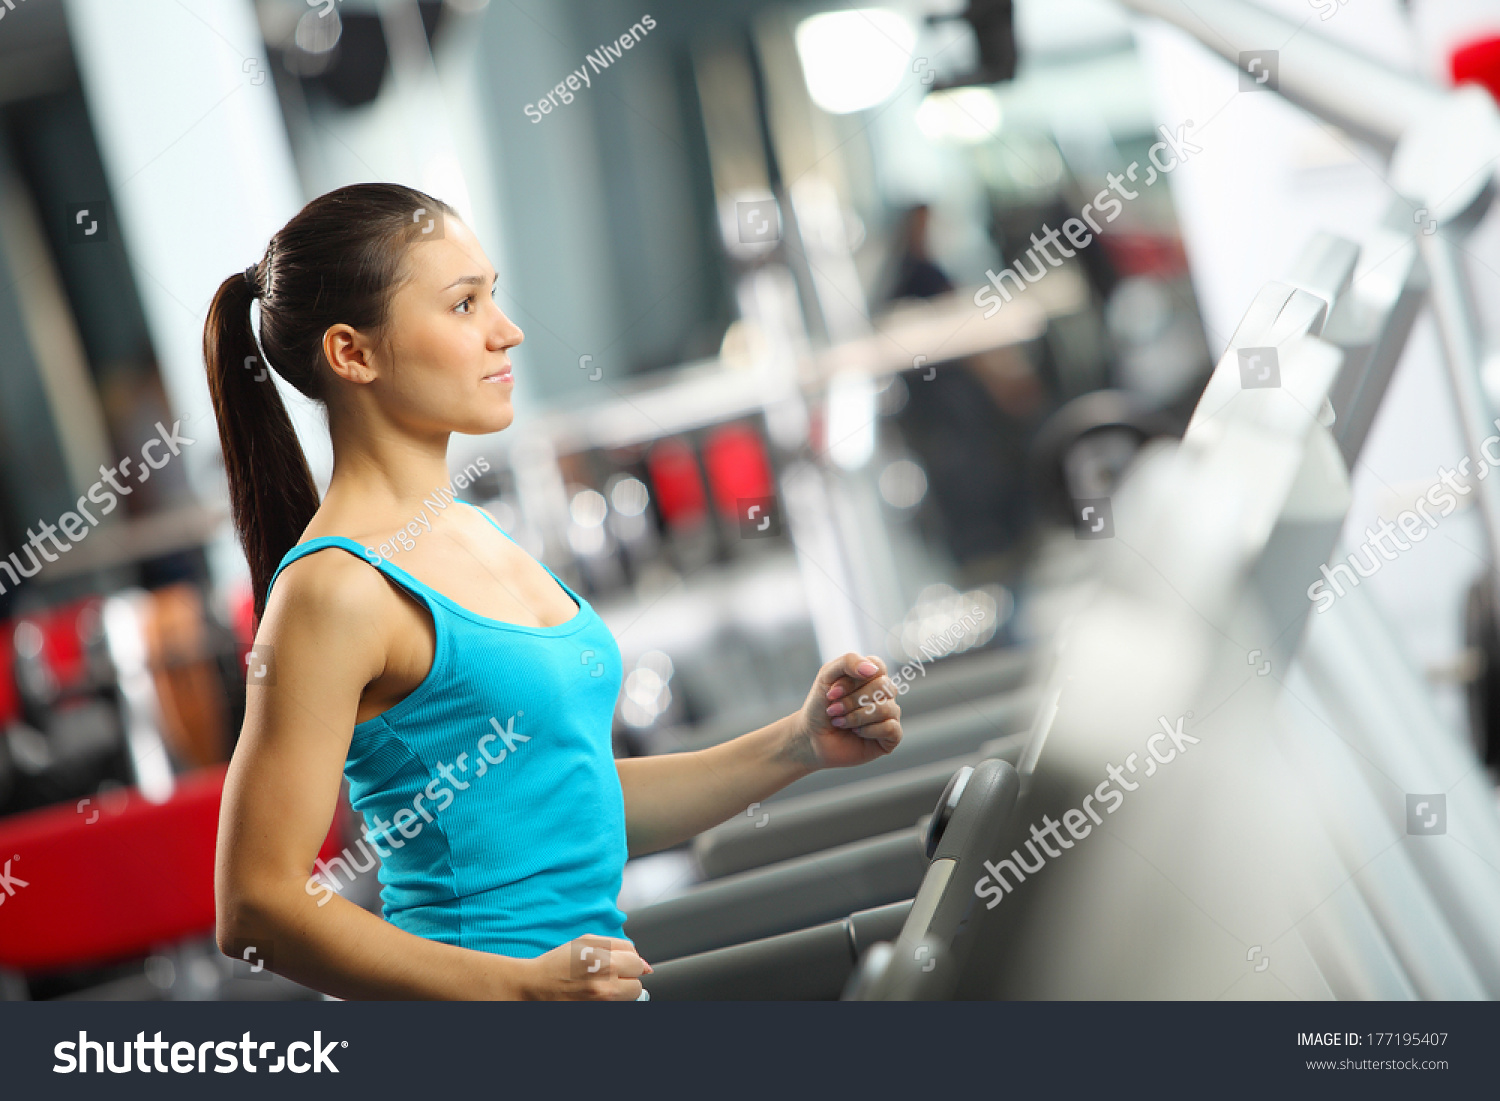 Image of fitness girl running on treadmill #177195407